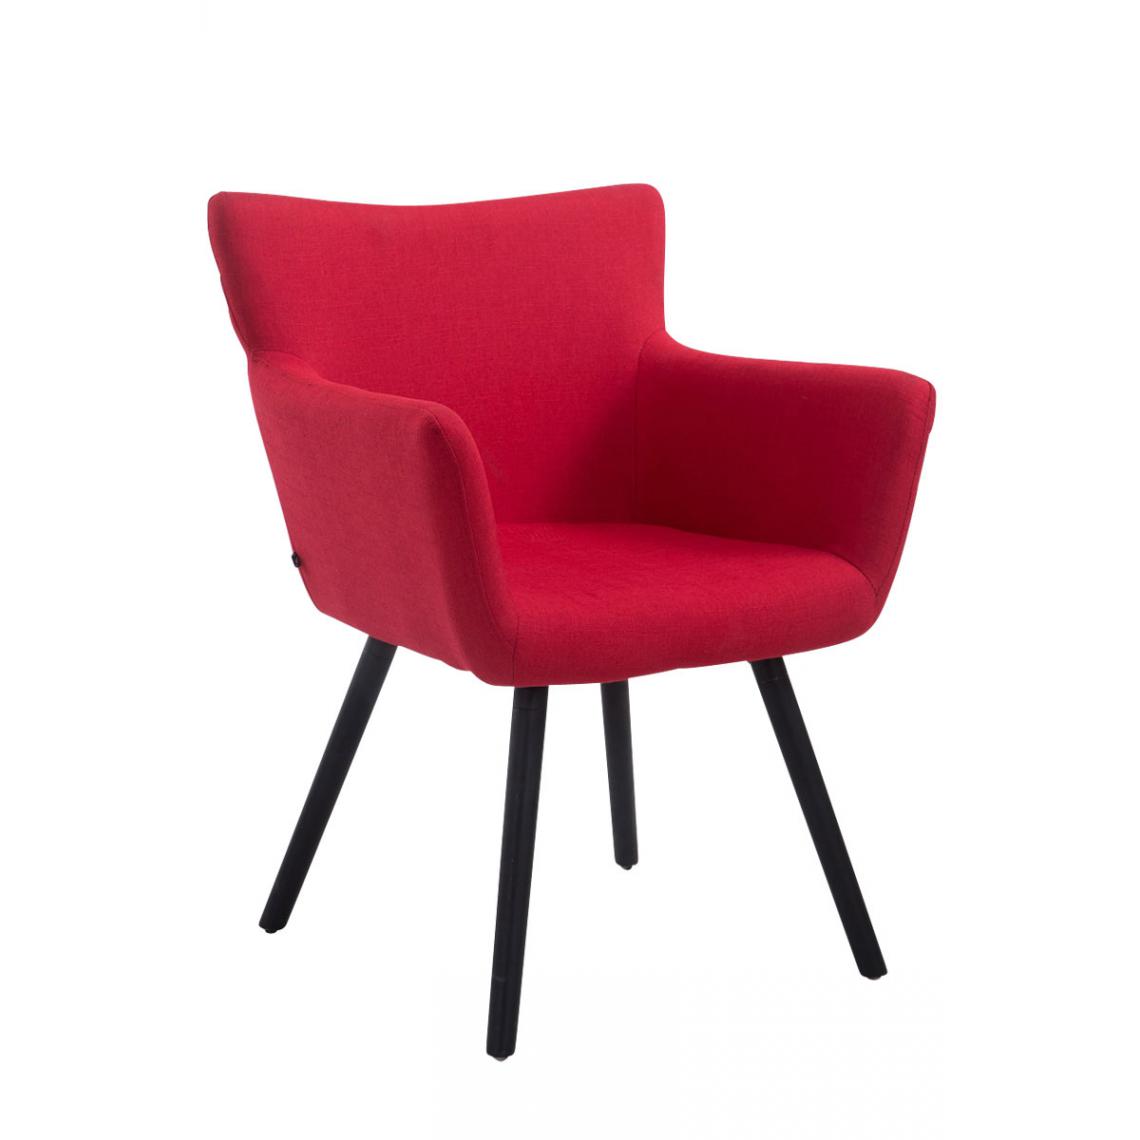 Icaverne - Splendide Chaise visiteur tissu gamme Mascate noir couleur rouge - Chaises